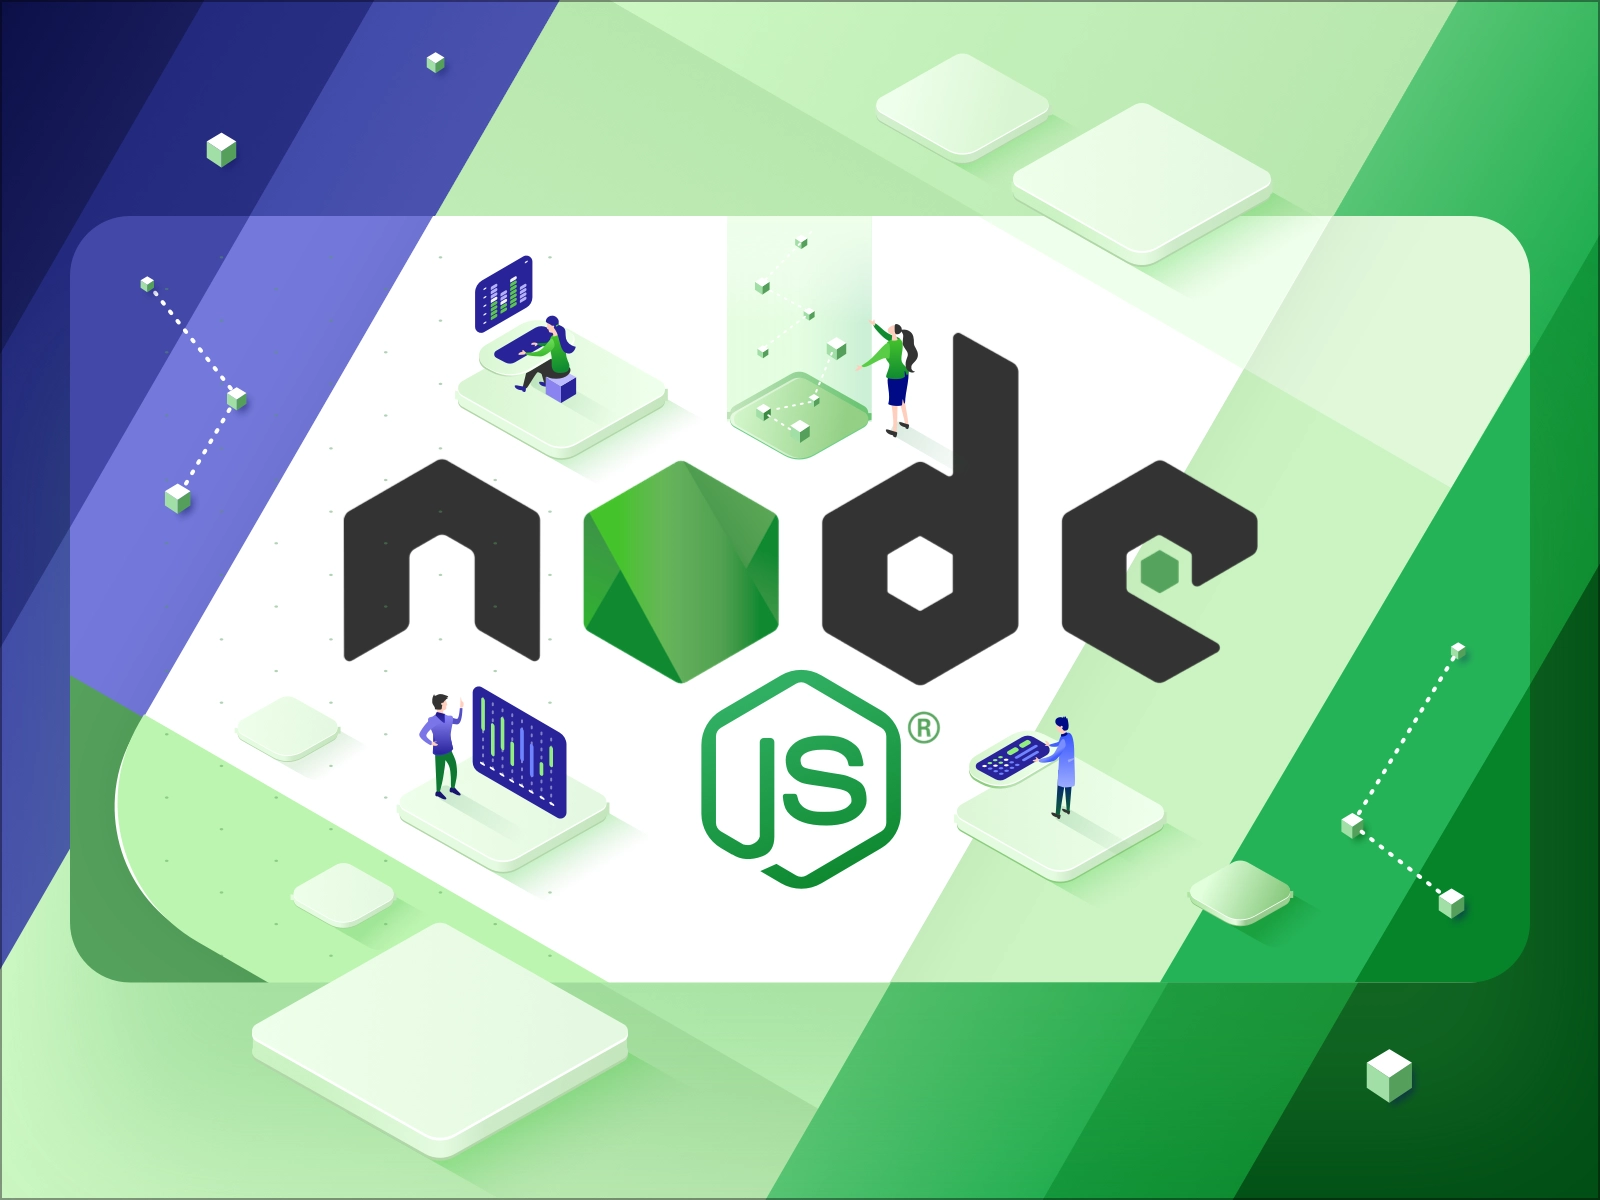 What Is Node.js?